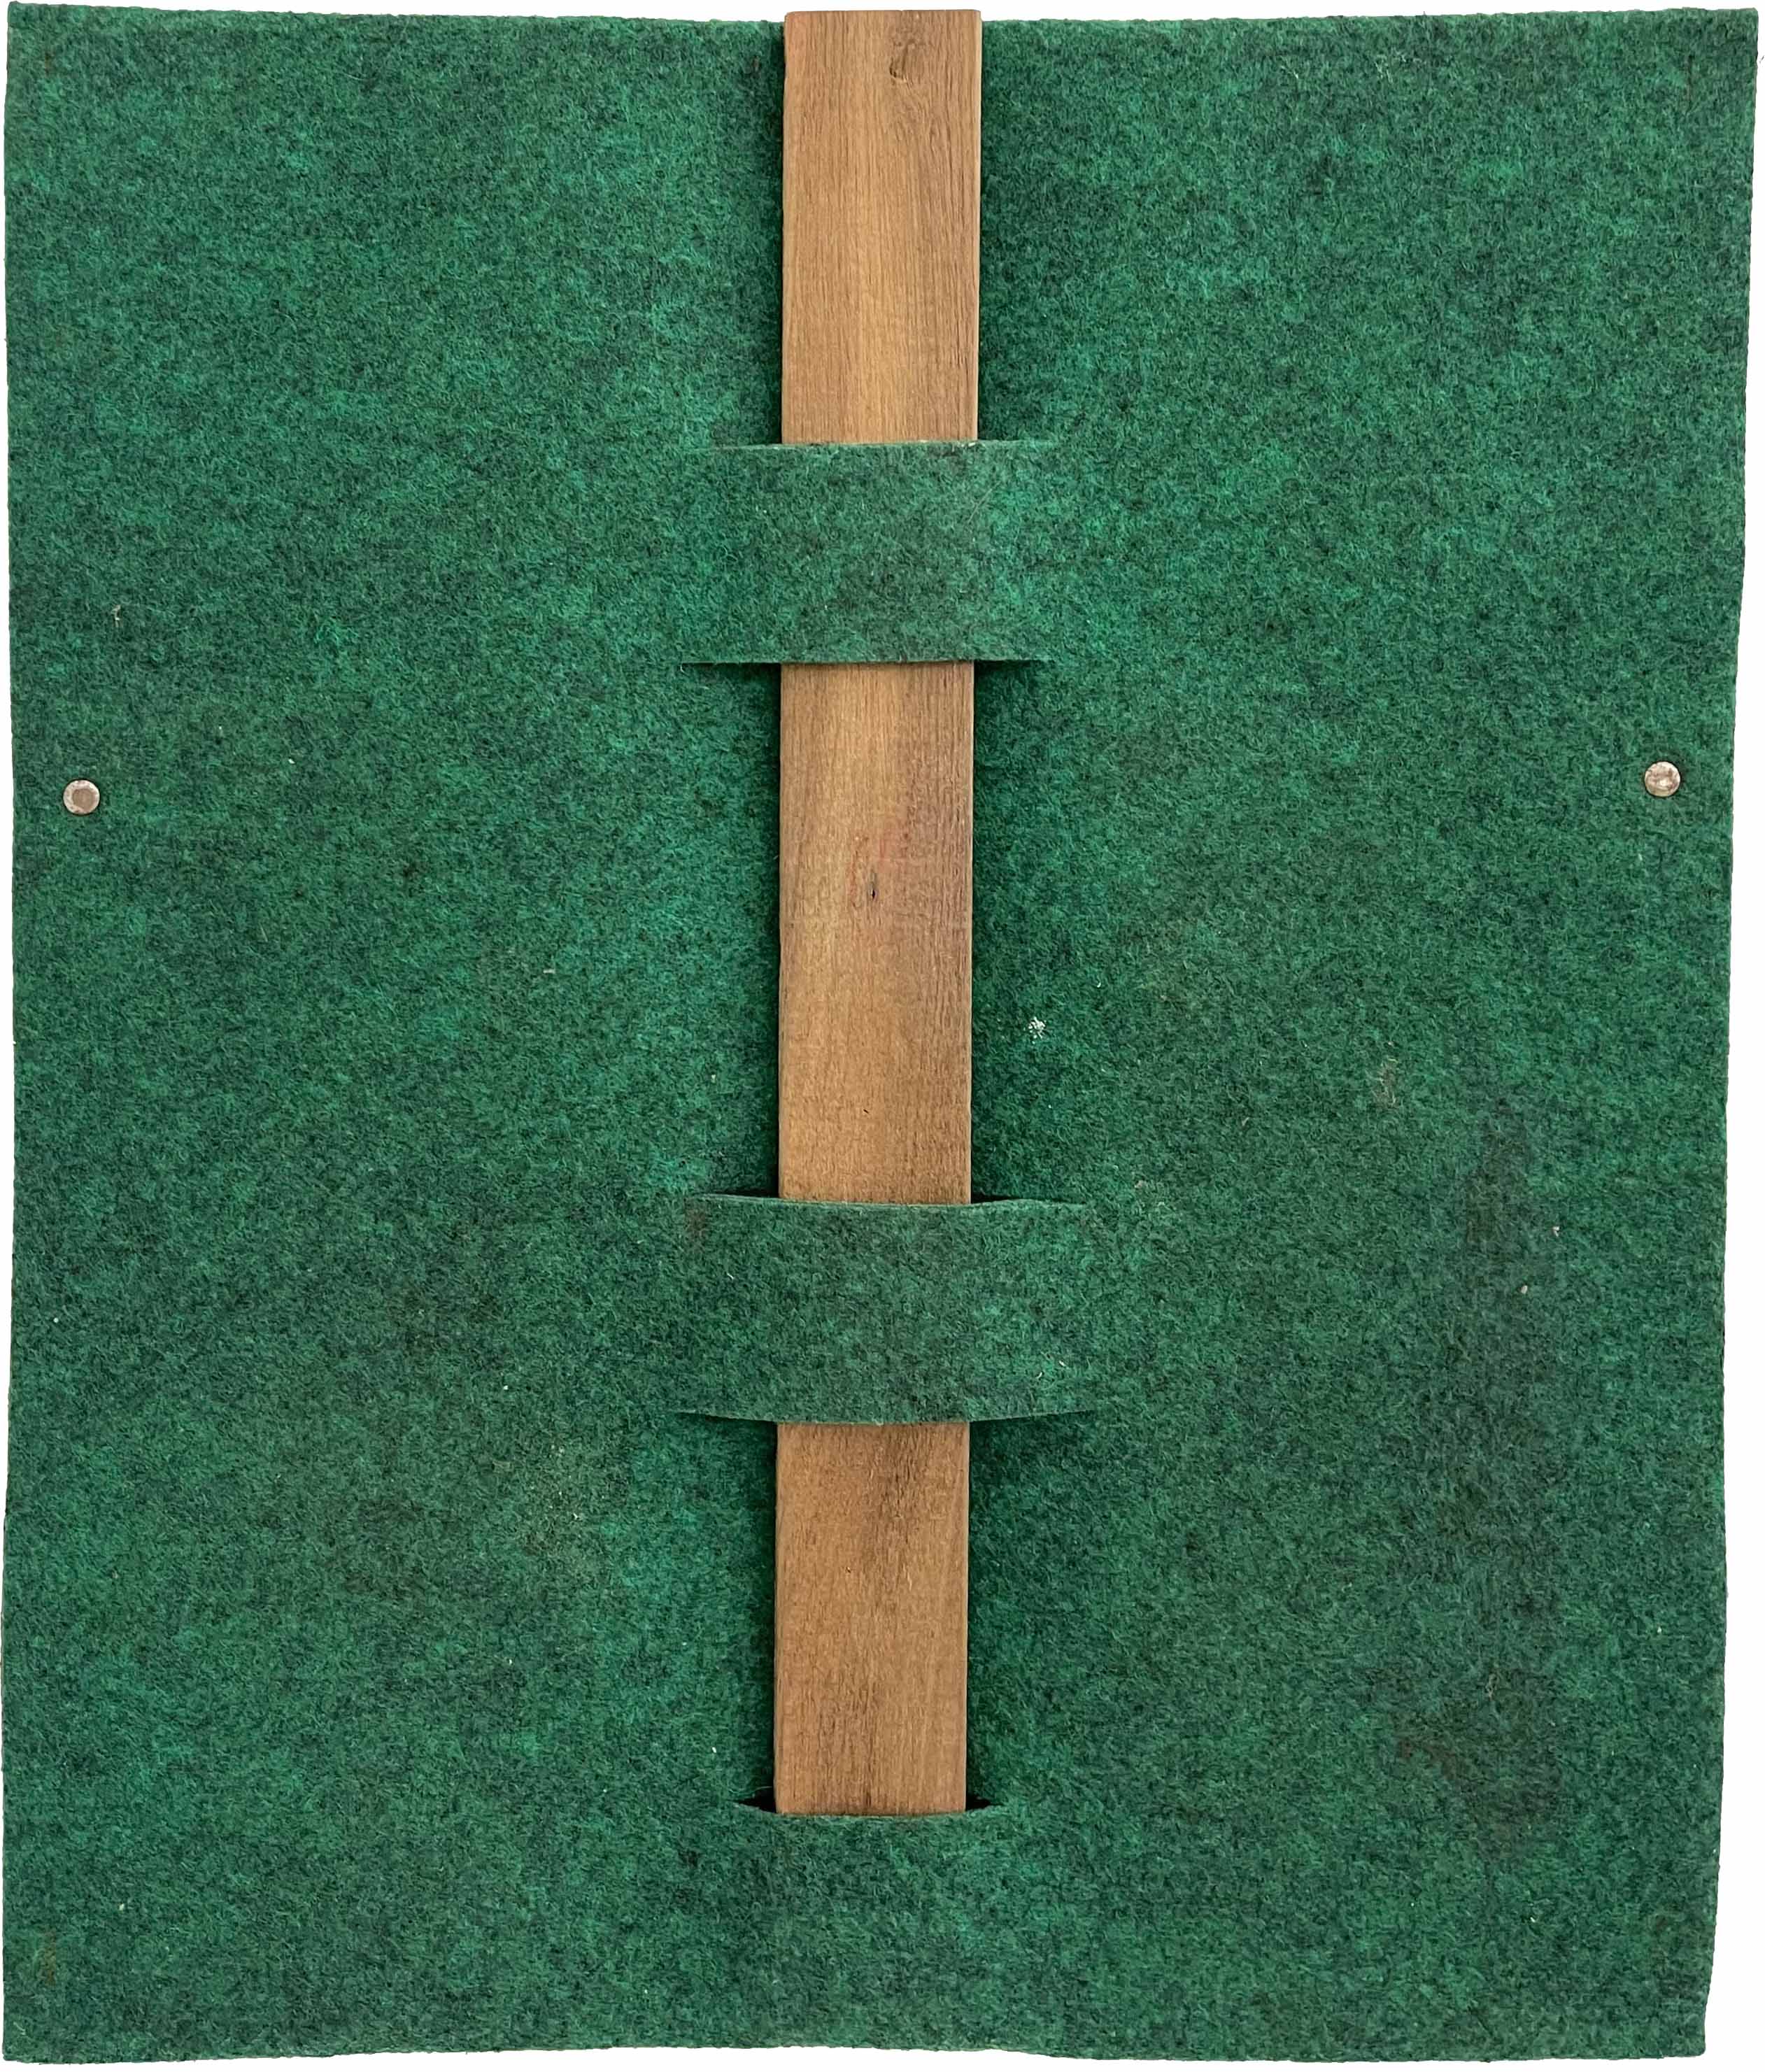 10. Almandrade, Sem títilo, 1983, Carpete e madeira, 50 x 40 cm